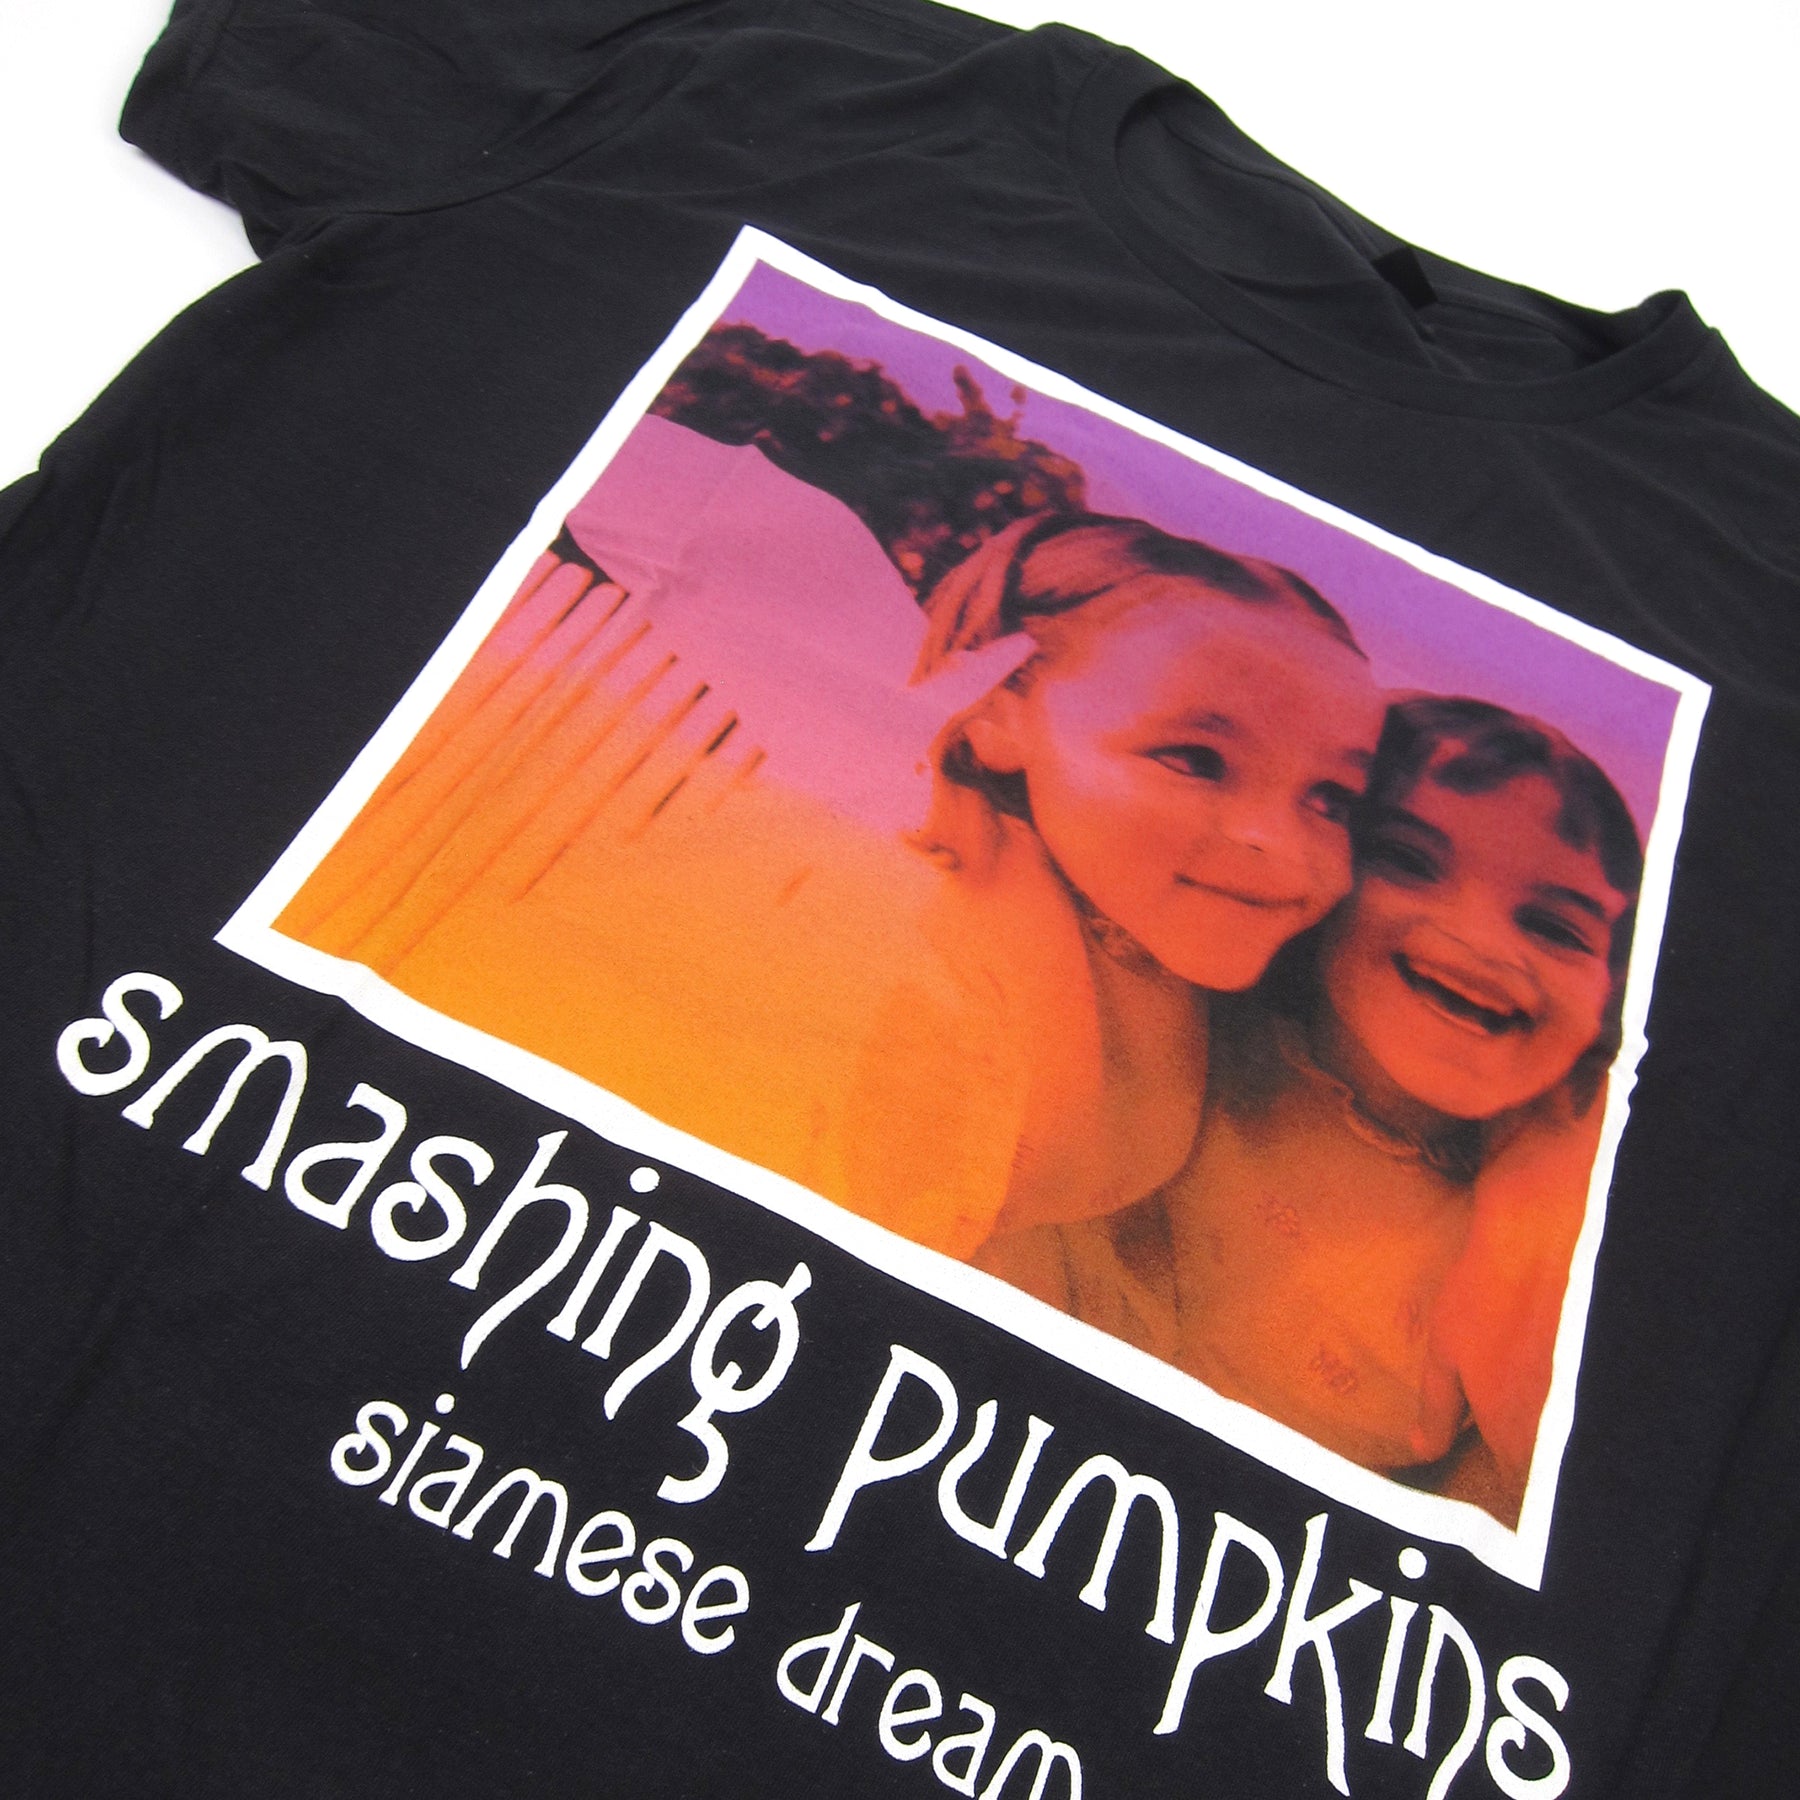 smashing pumpkins siamese dream shirt